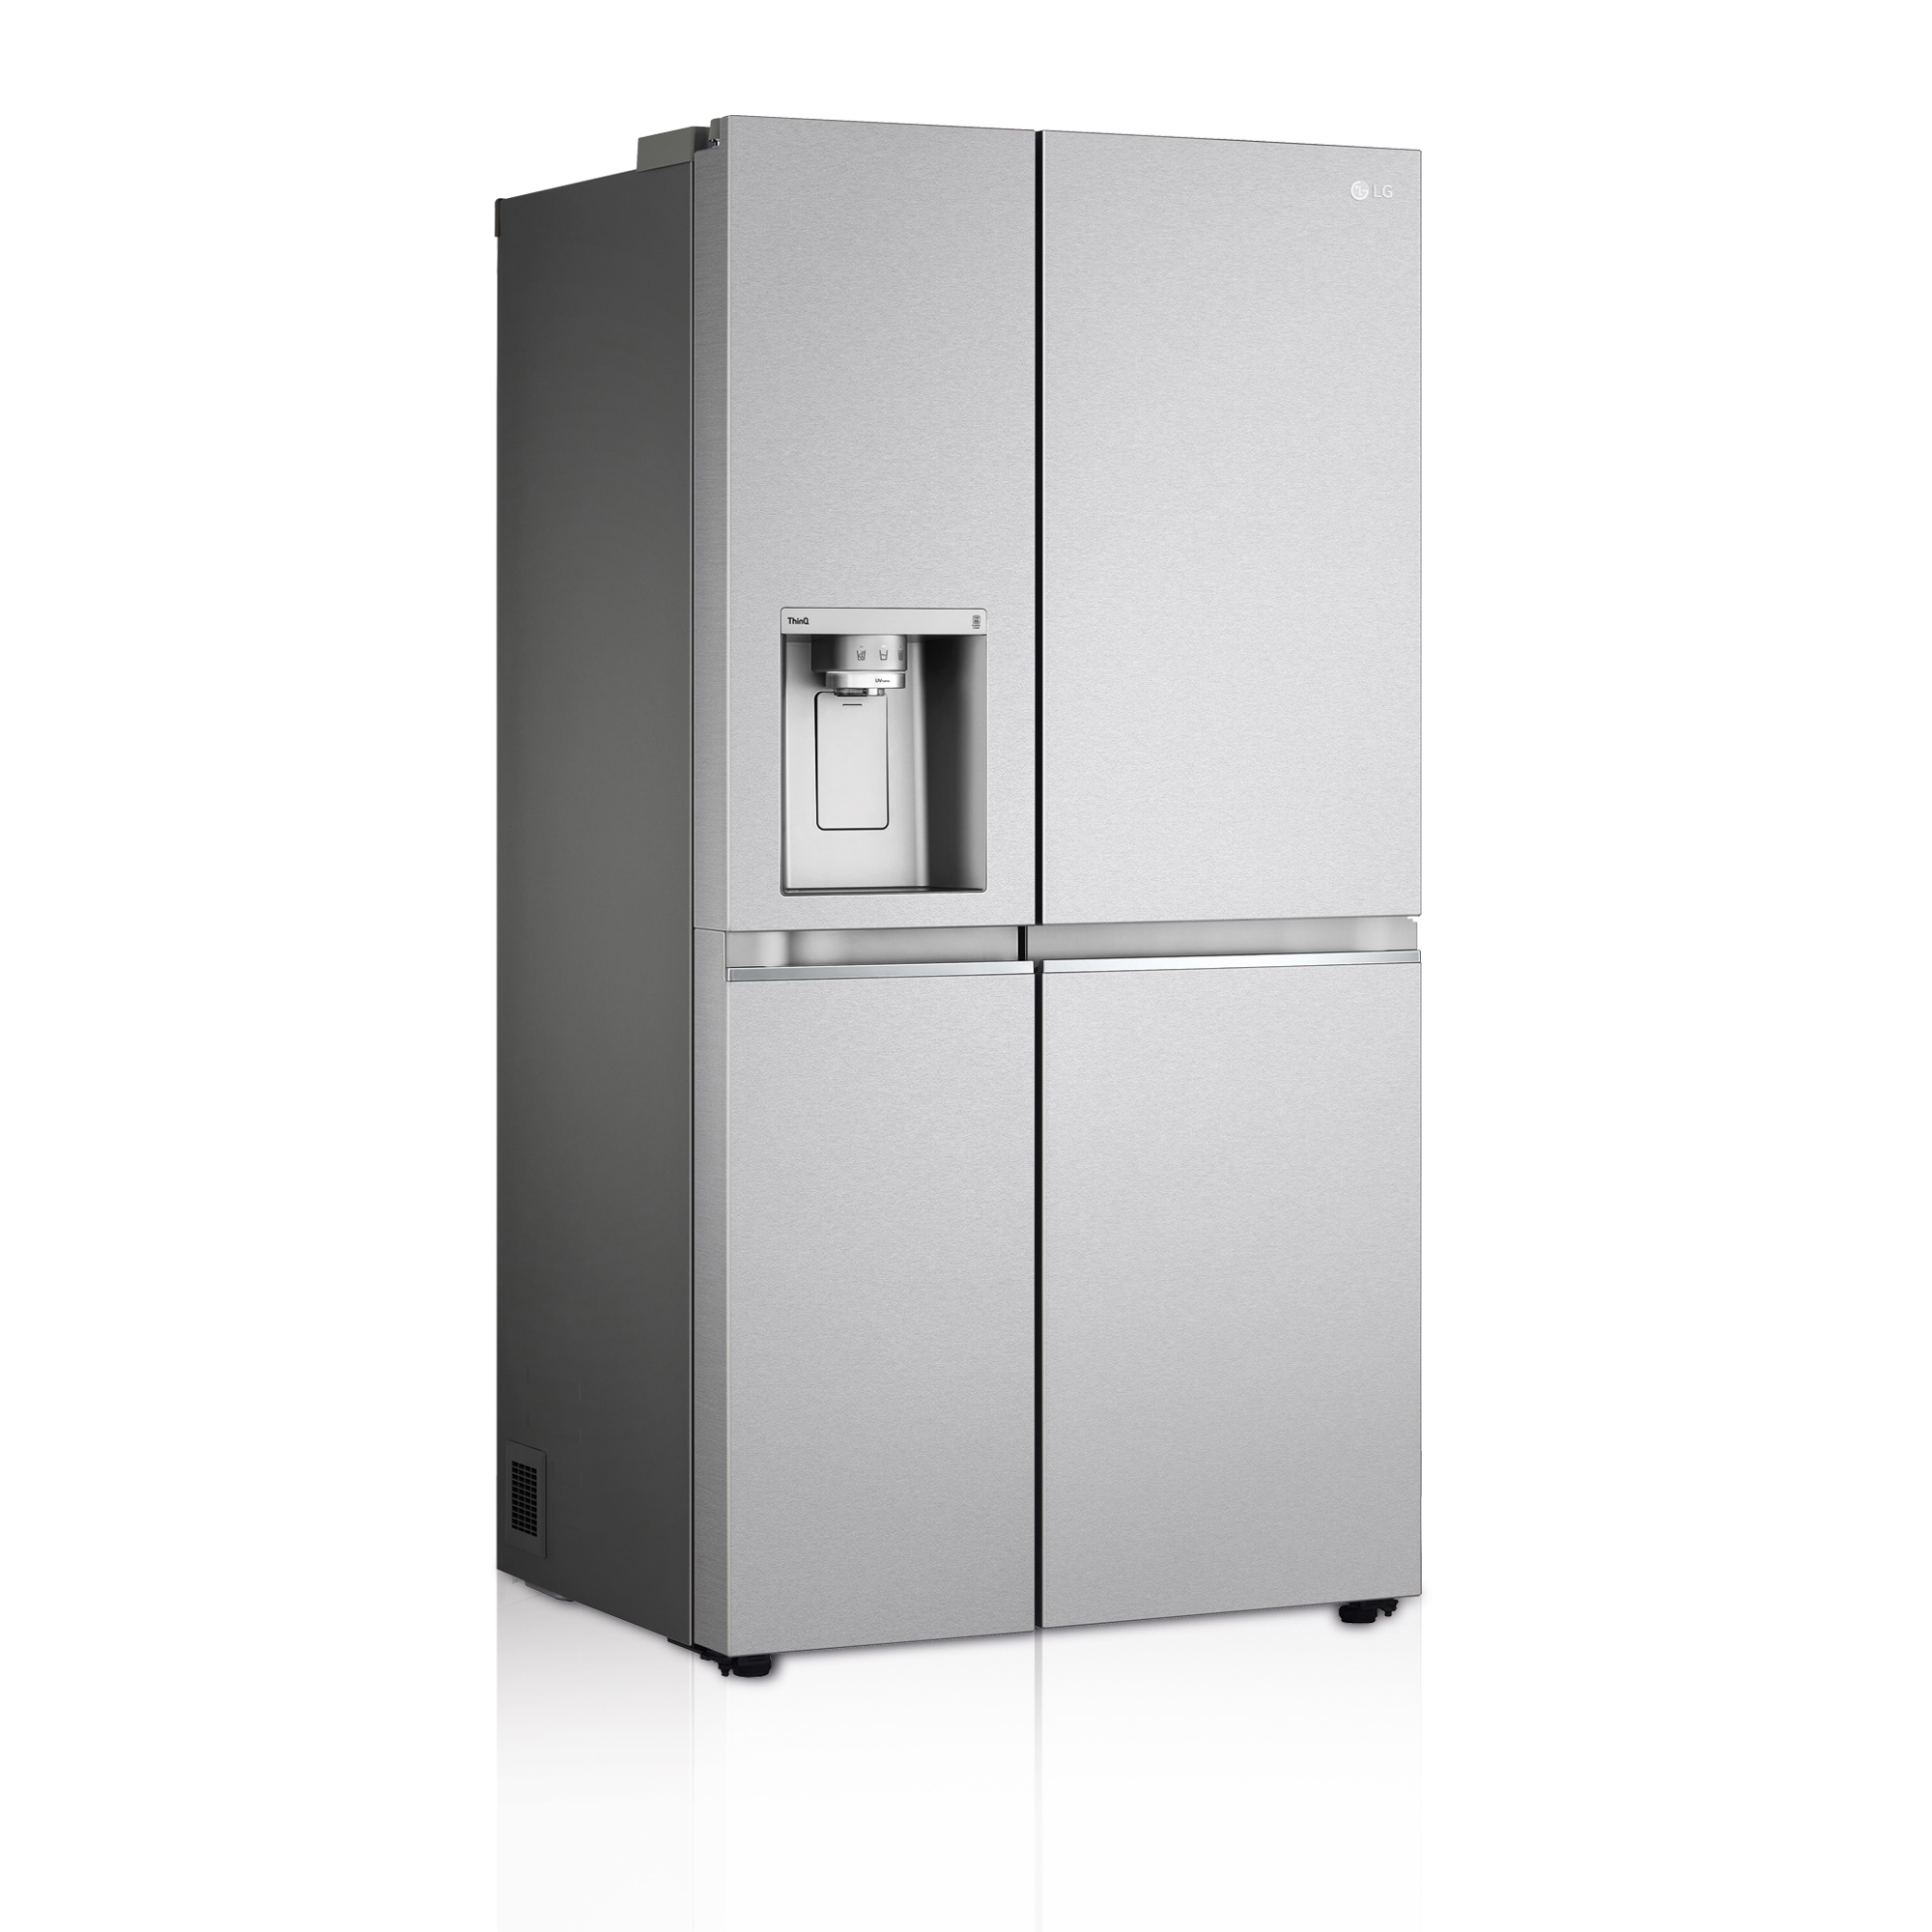 5 claves que hacen únicos a los frigoríficos de LG